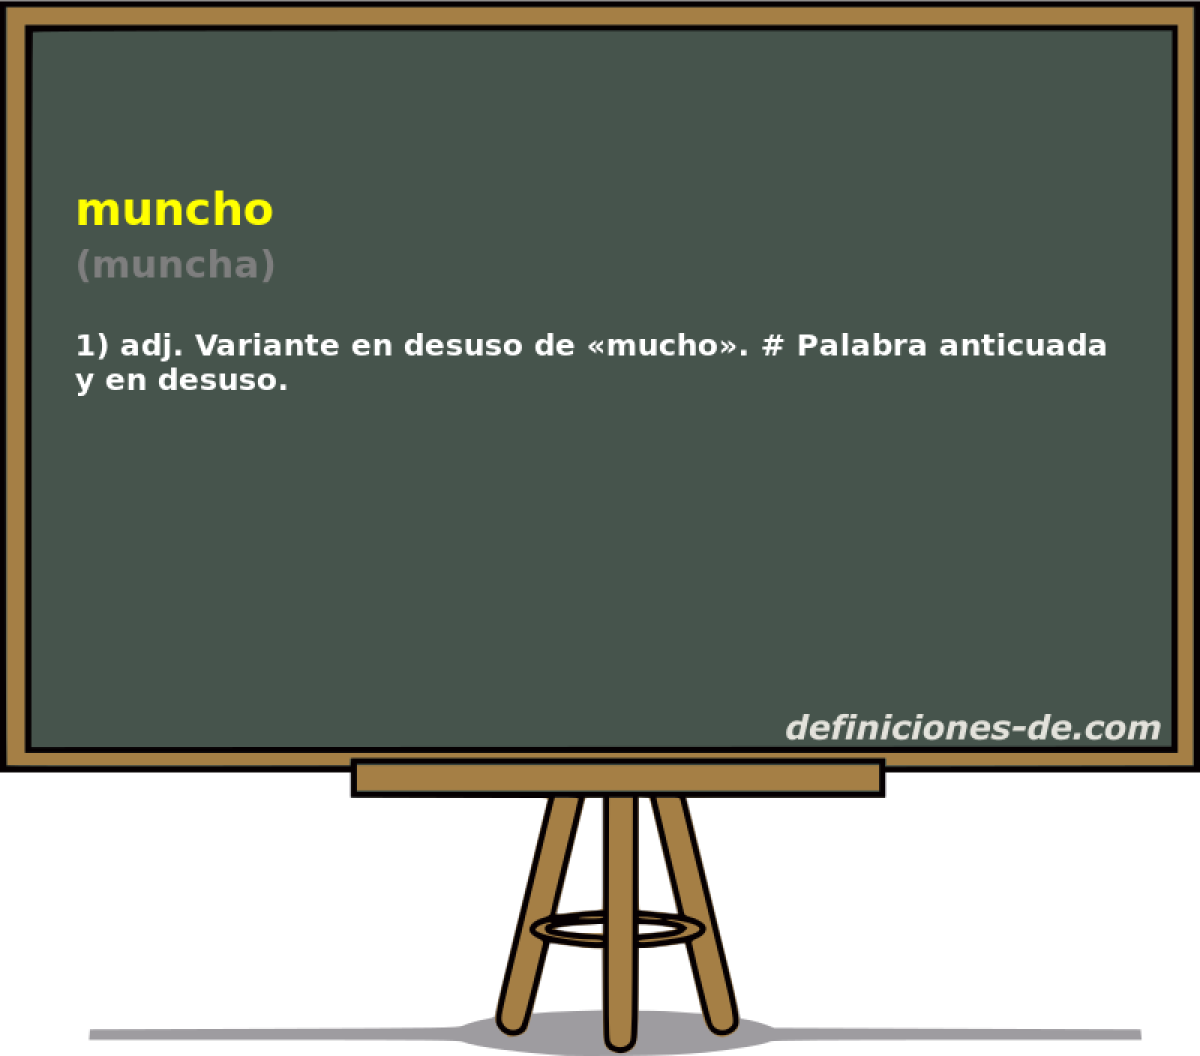 muncho (muncha)